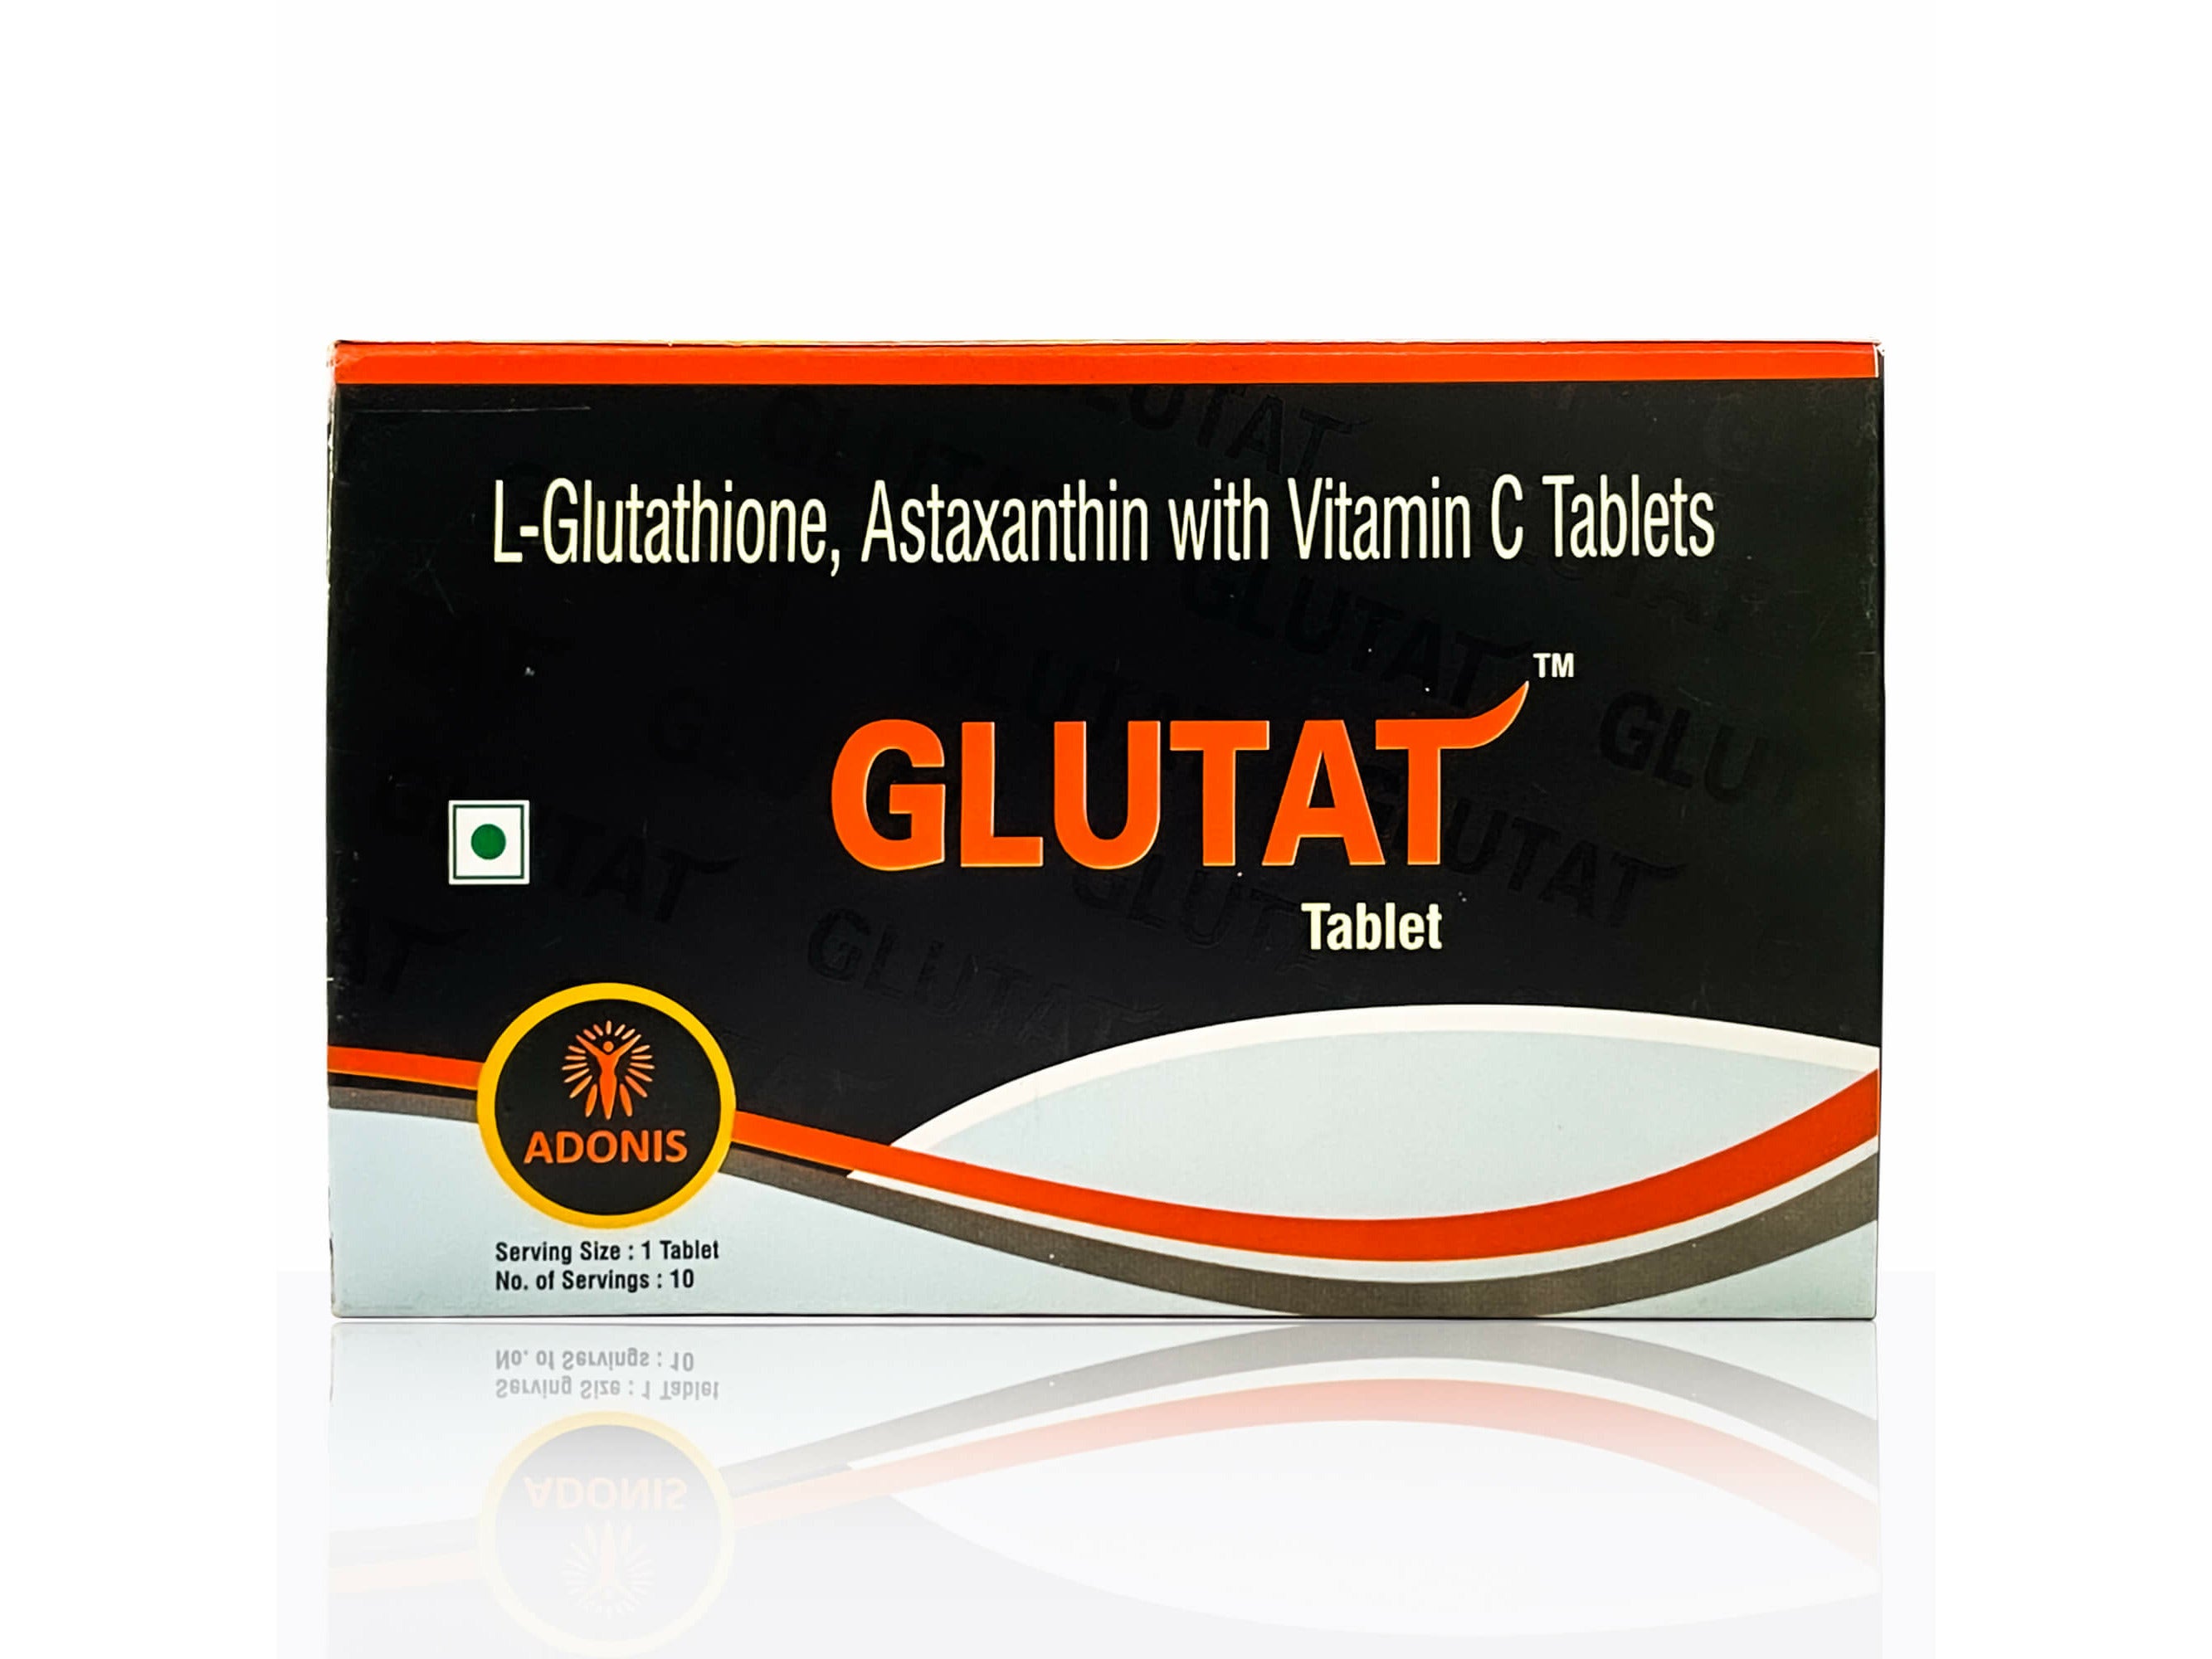 Adonis Glutat Tablets - Clinikally